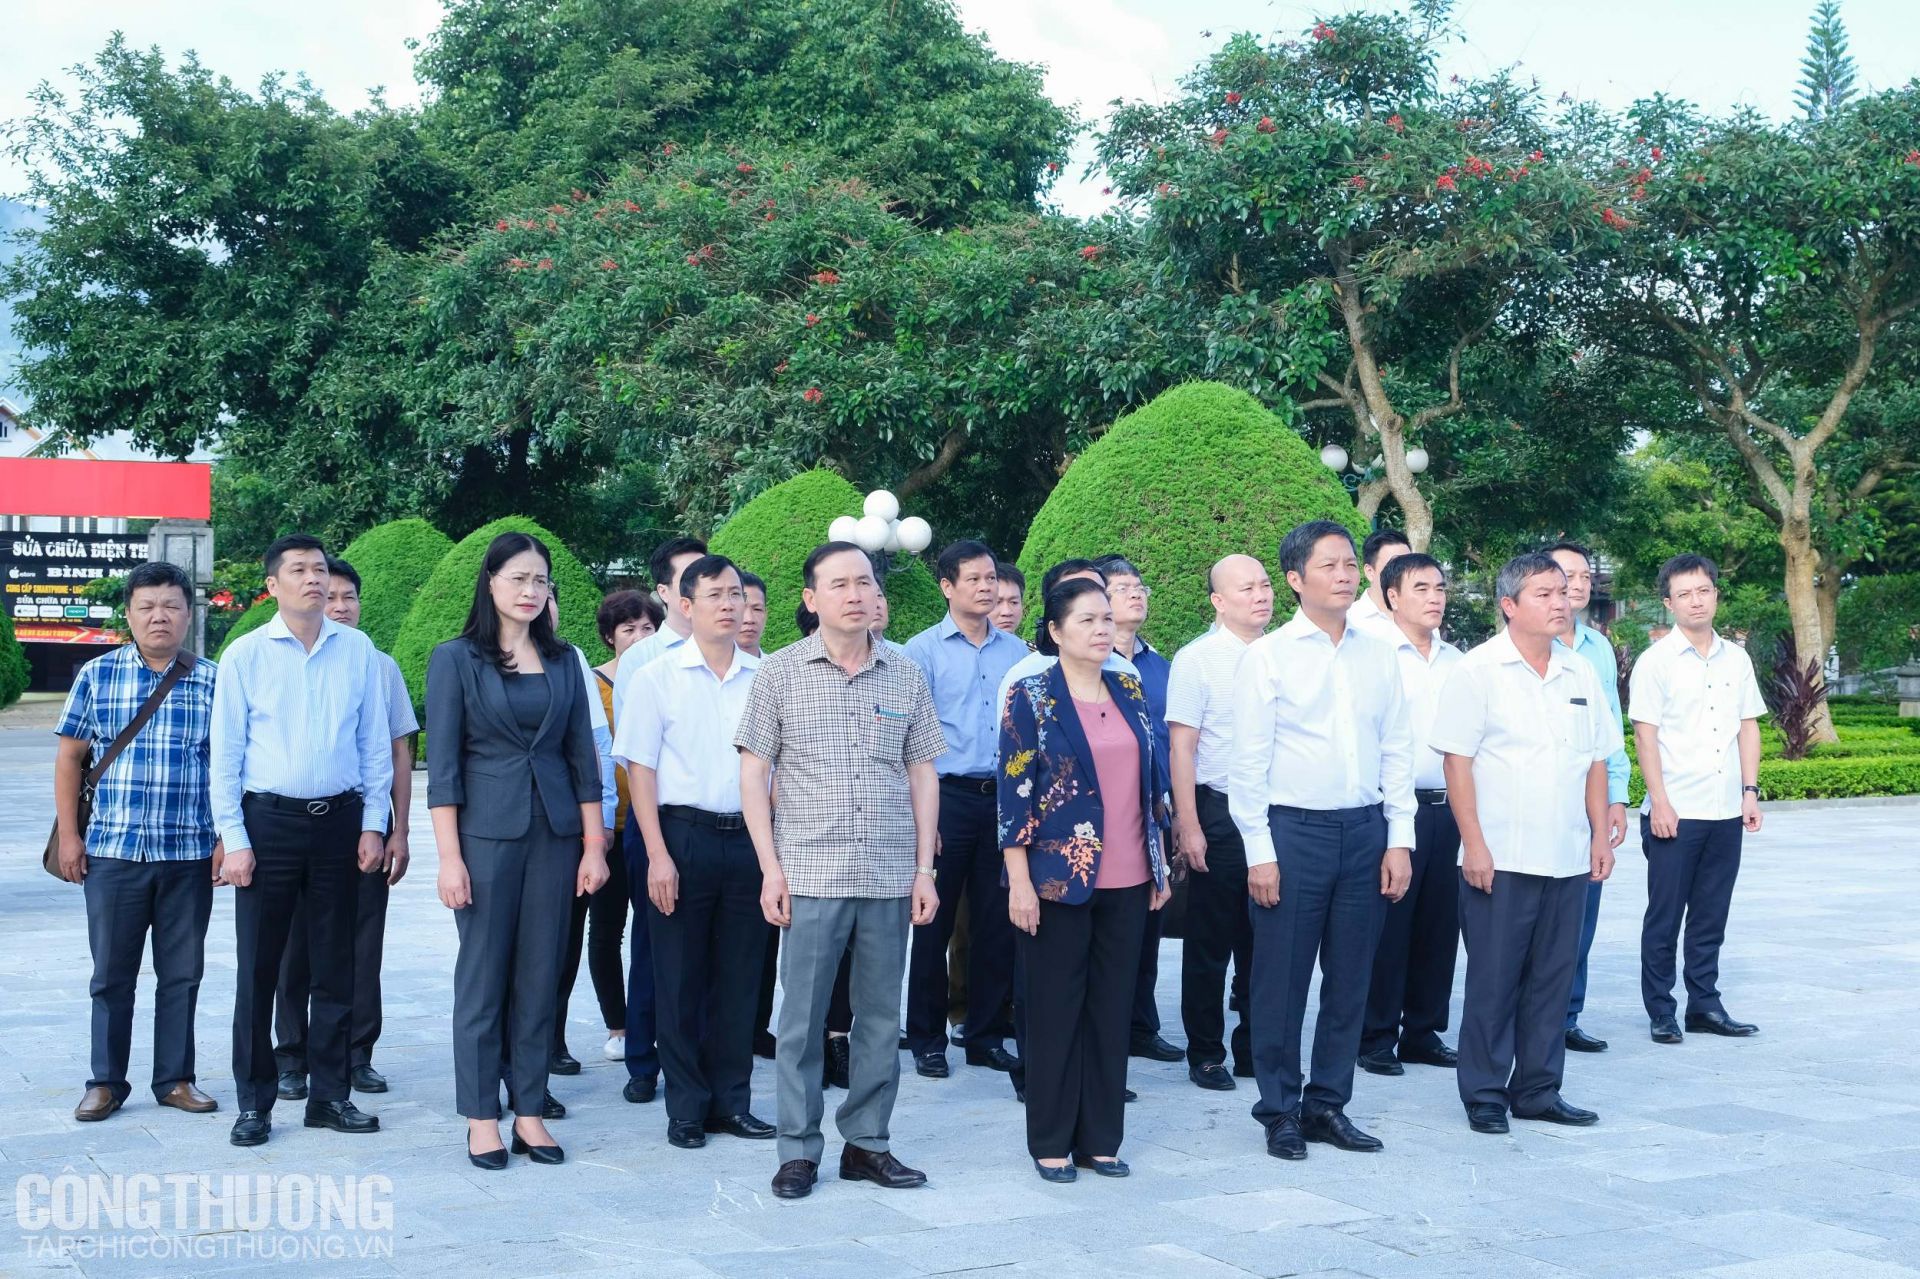 Bộ trưởng Trần Tuấn Anh cùng Đoàn công tác Bộ Công Thương tới dâng hương tưởng niệm các anh hùng liệt sĩ tại Nghĩa trang liệt sĩ tỉnh Lai Châu